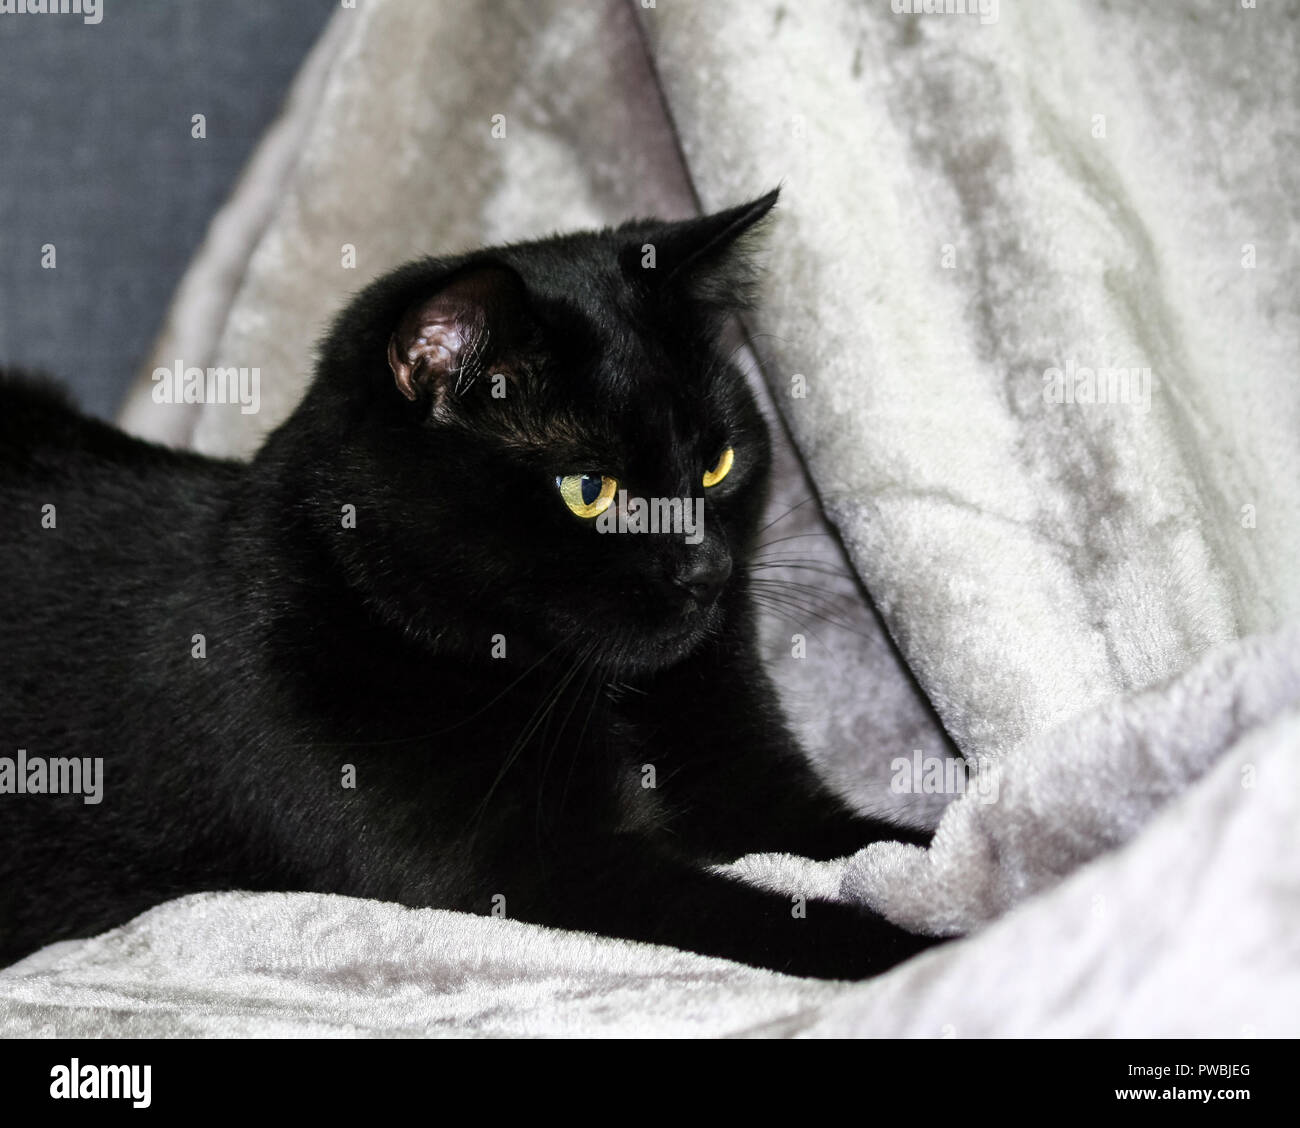 Unbred schwarze Katze liegend auf einem grauen Teppich, auf die Seite Suchen, im Hintergrund einen leichten grauen und blauen Farbton, Tier halb liegend, Portrait im Profil, Stockfoto